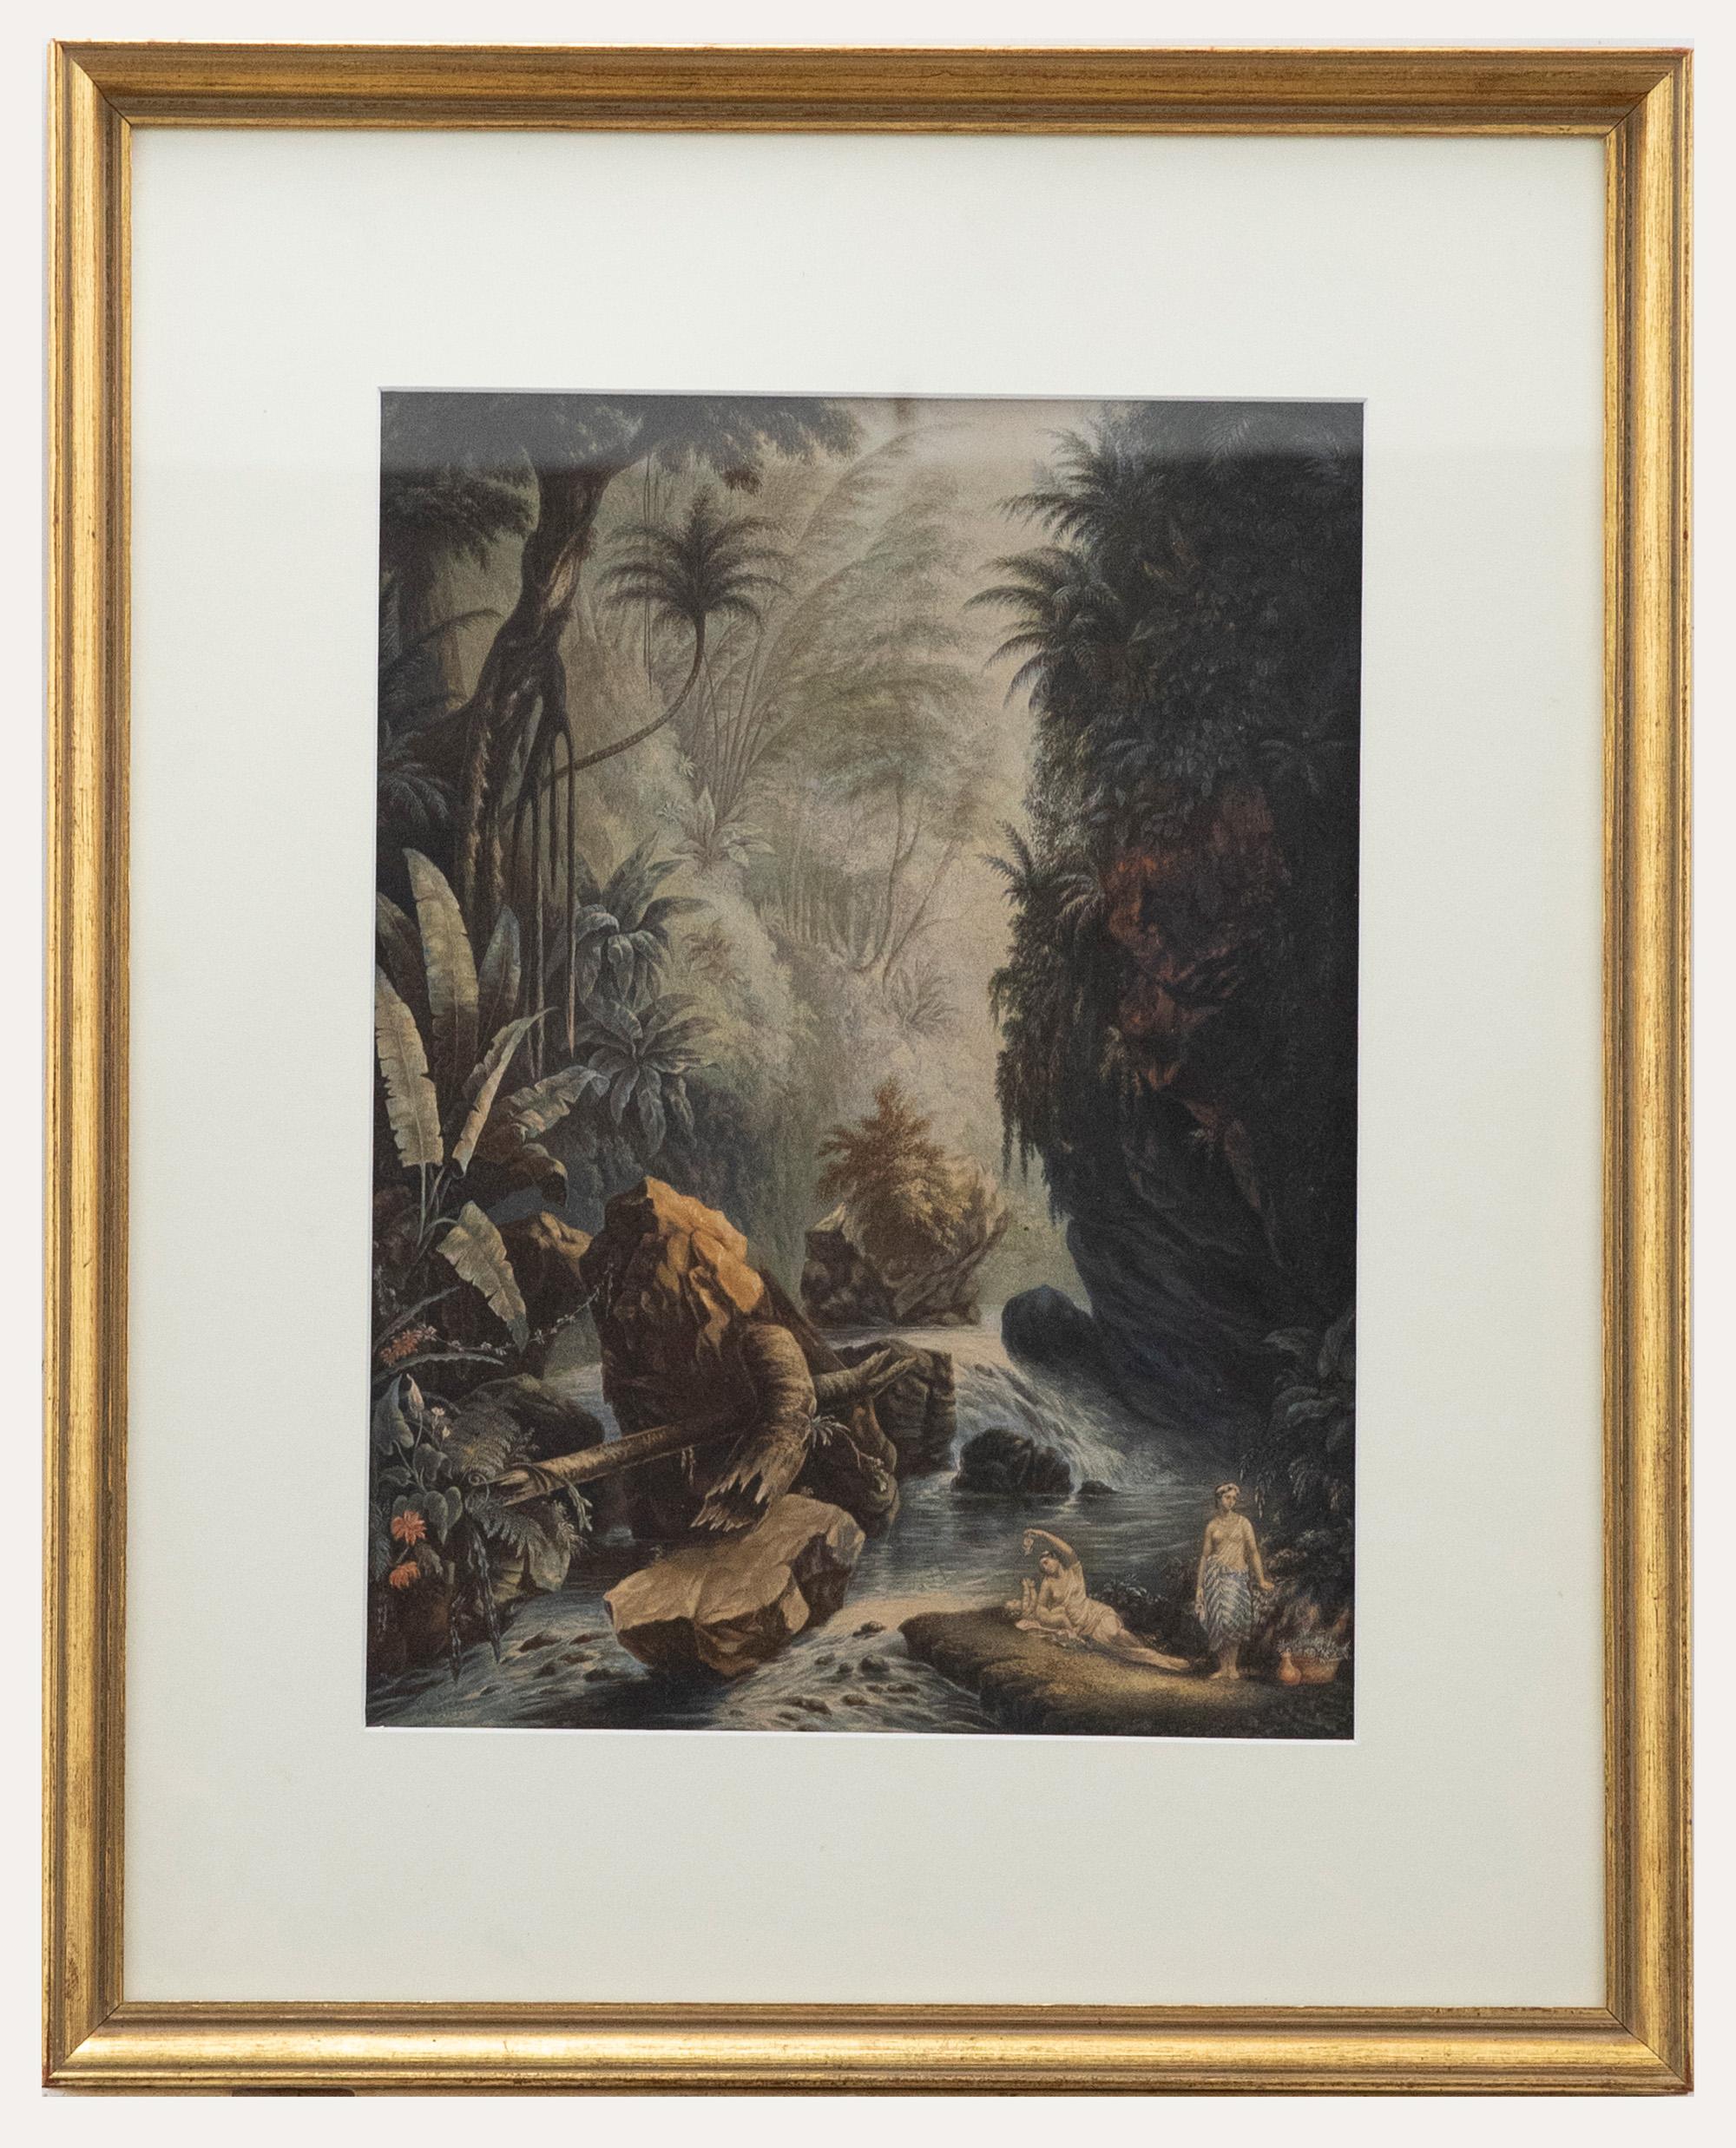 Unknown Landscape Print – Gerahmter Baxter- Methodendruck von George Baxter aus dem Jahr 1856, Arcadia